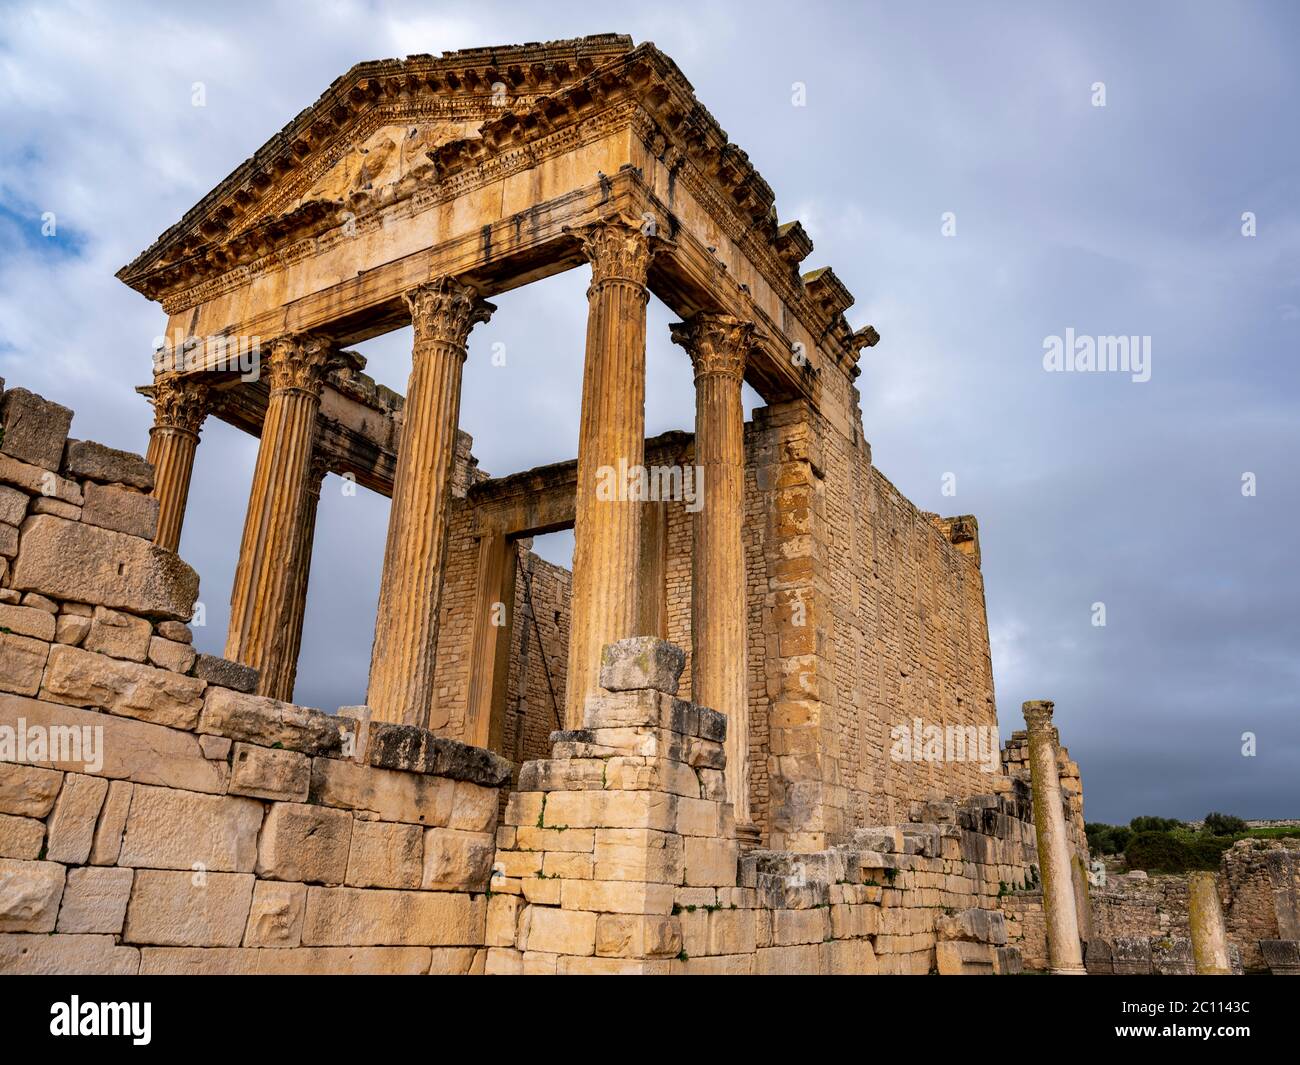 Der Tempel des Jupiter oder das Kapitol, das wichtigste stehende Gebäude der antiken römischen archäologischen Stätte von Dougga (Thugga), Tunesien Stockfoto